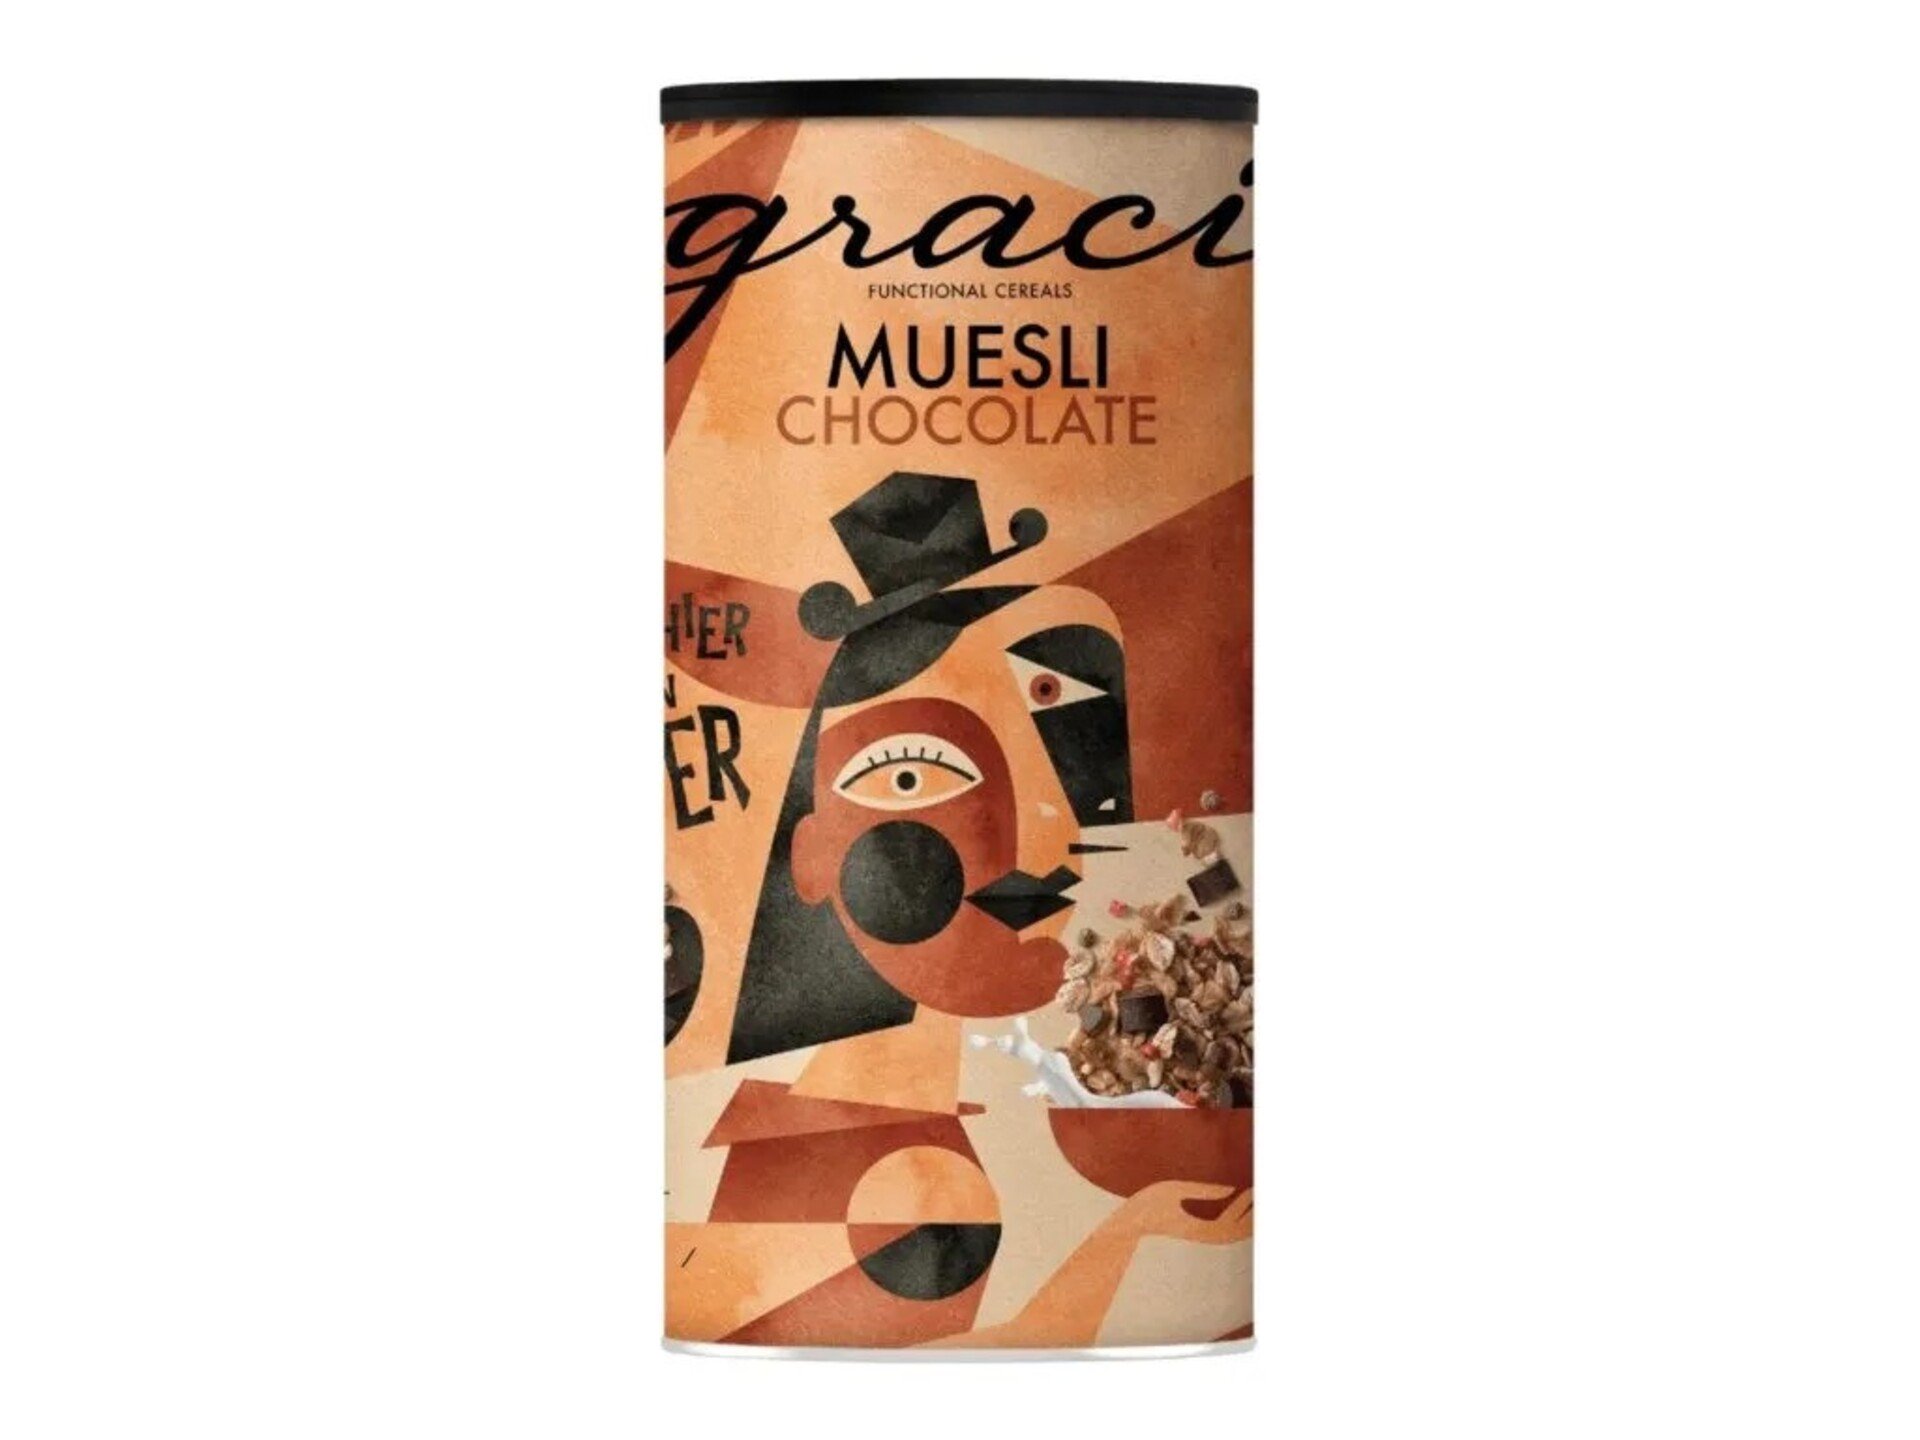 Graci Müsli chocolate 500 g